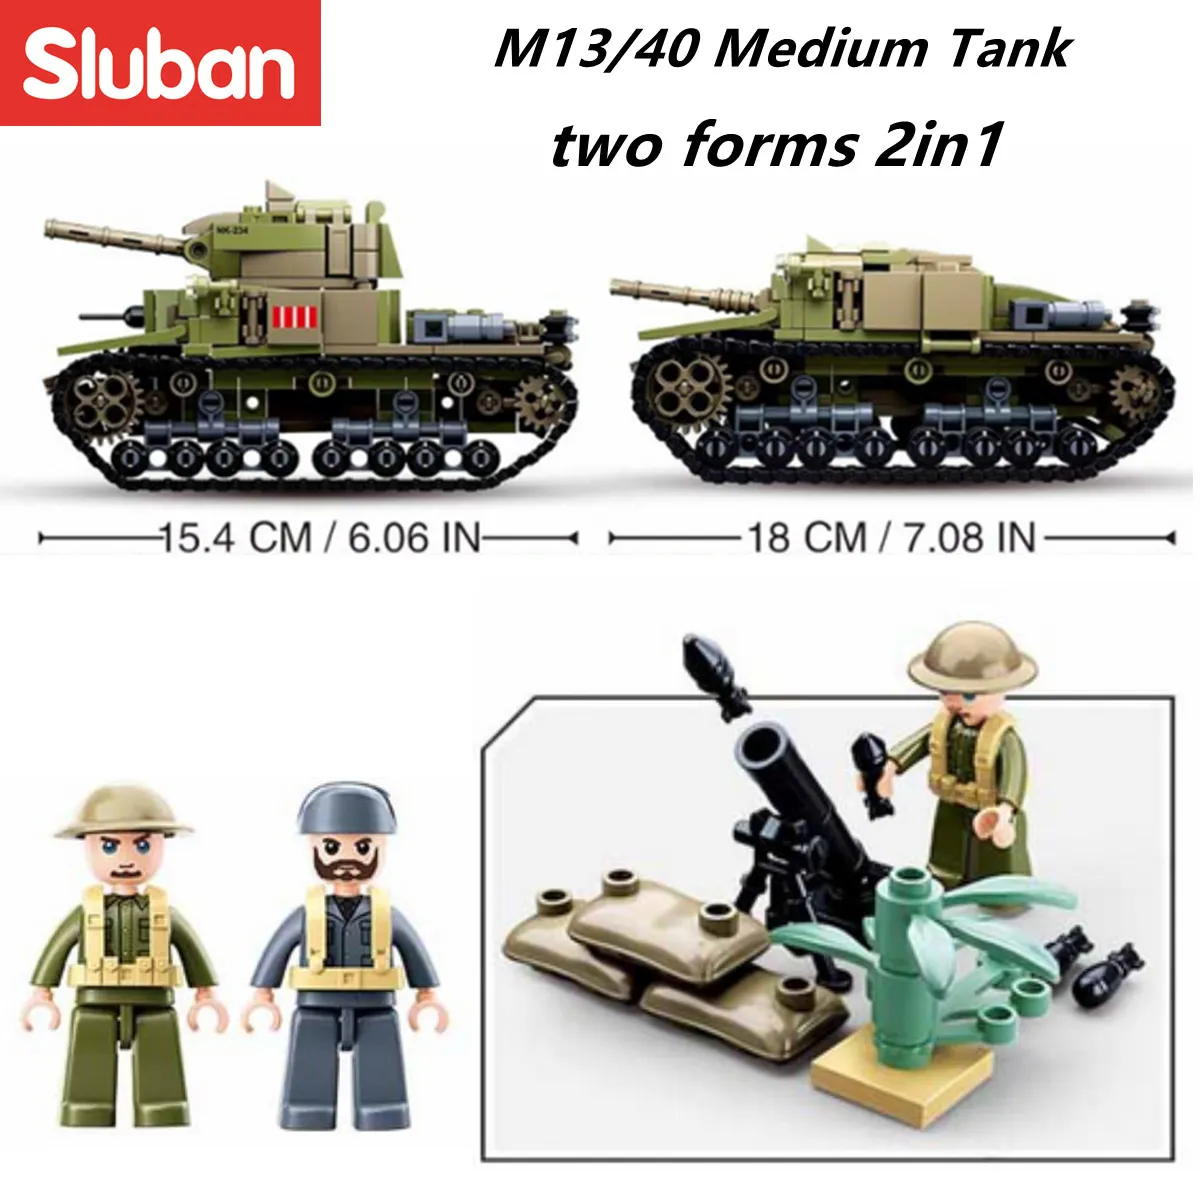 Sluban Military Series, Sluban Military Blocks